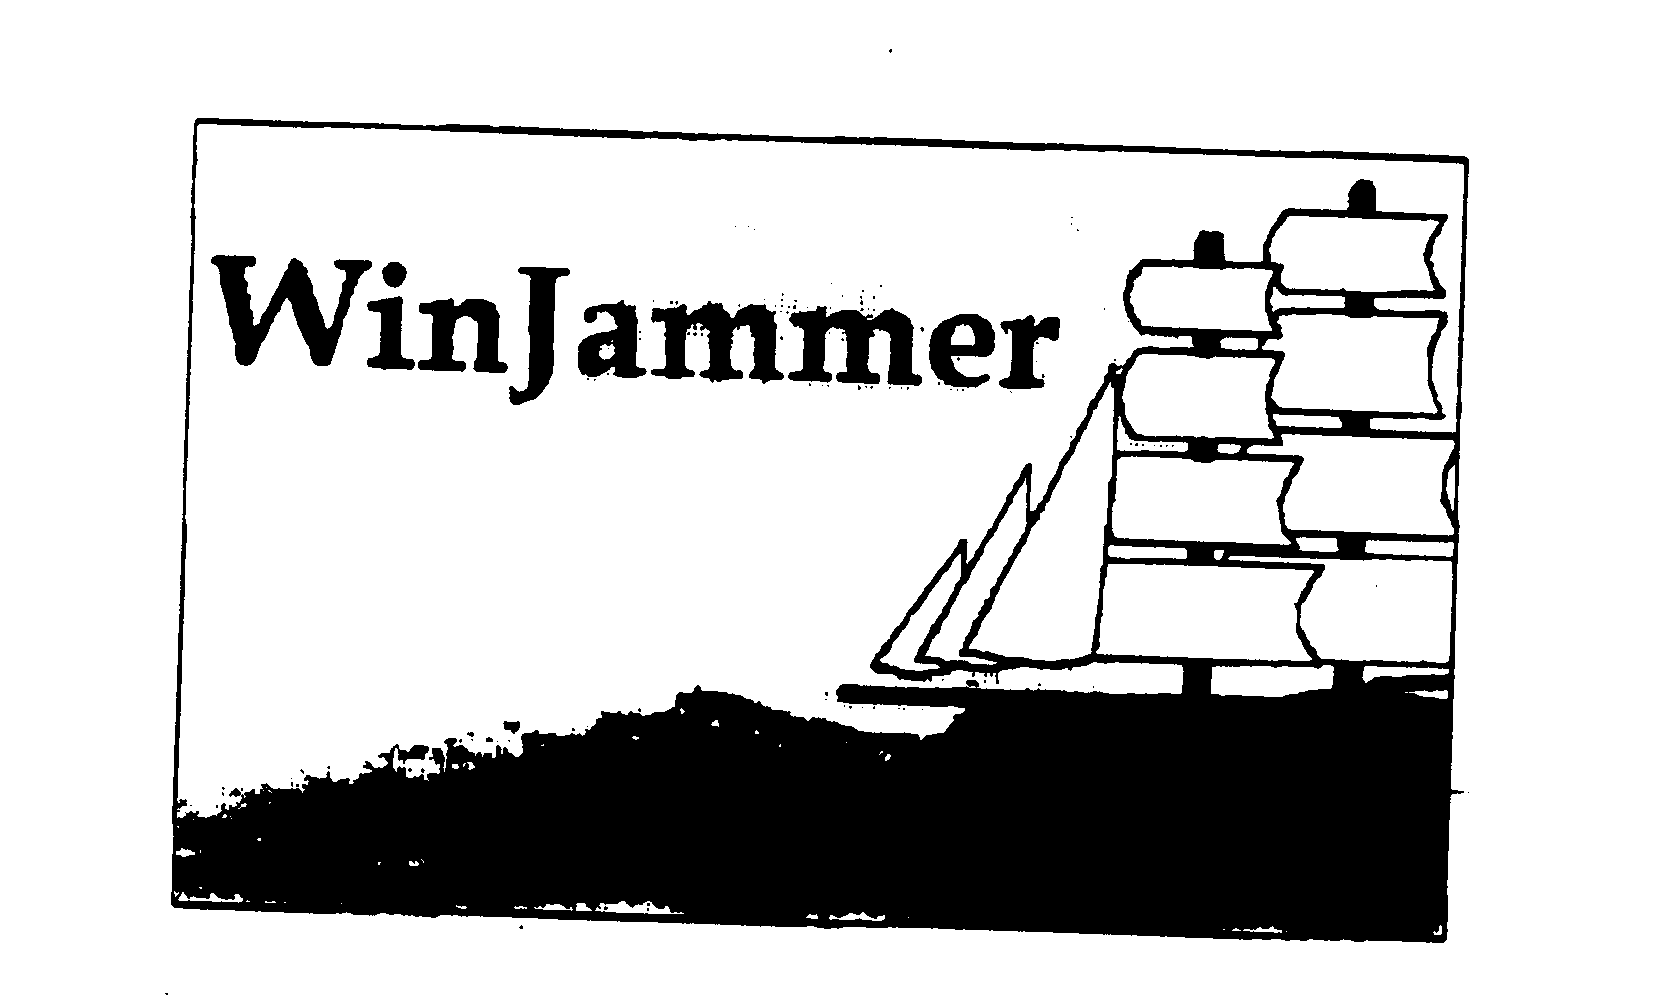 Trademark Logo WINJAMMER